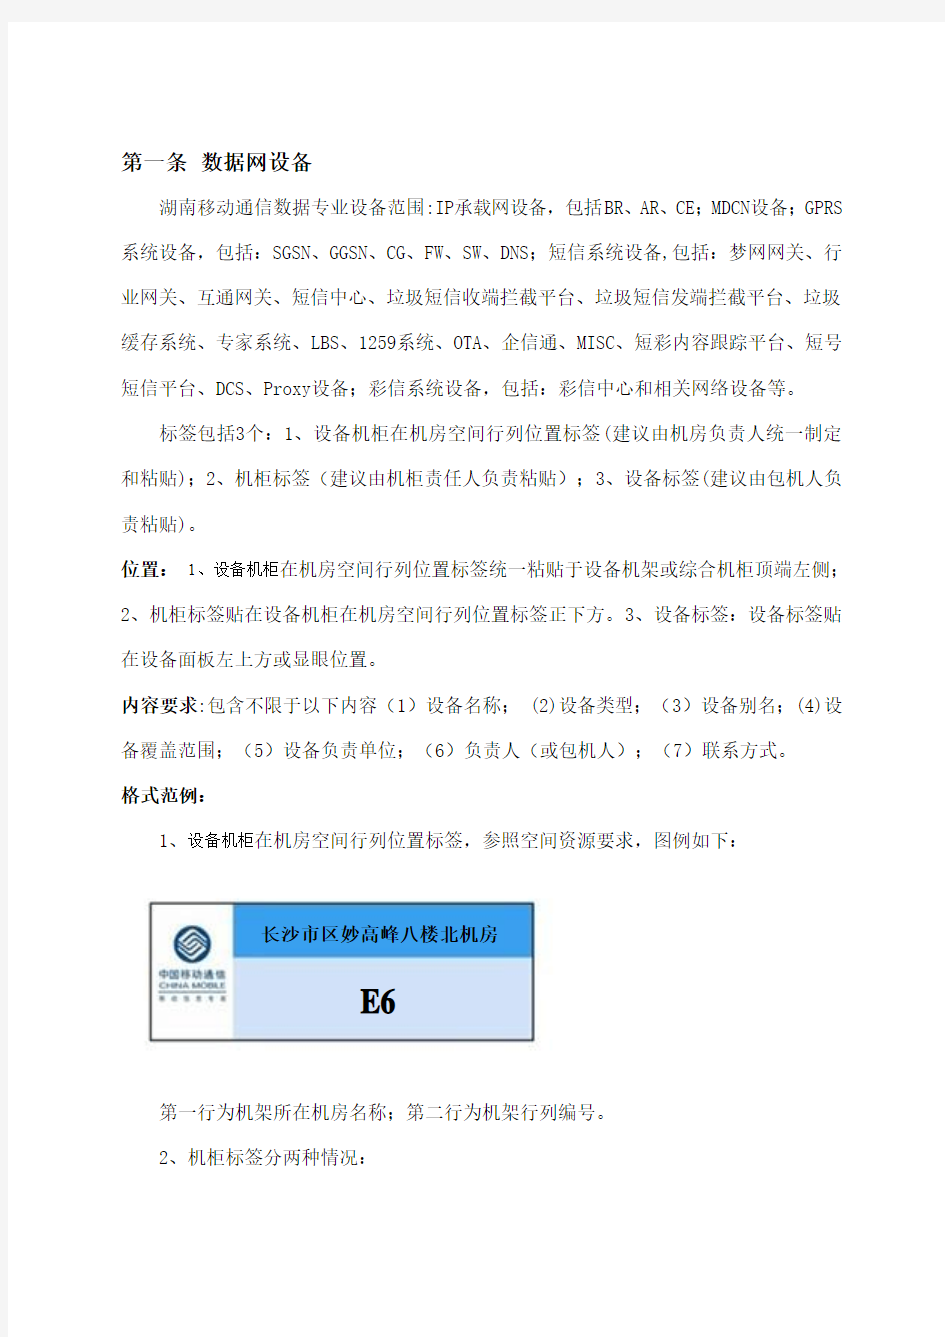 中国移动机房标签标识标准化规范(V1)(3)